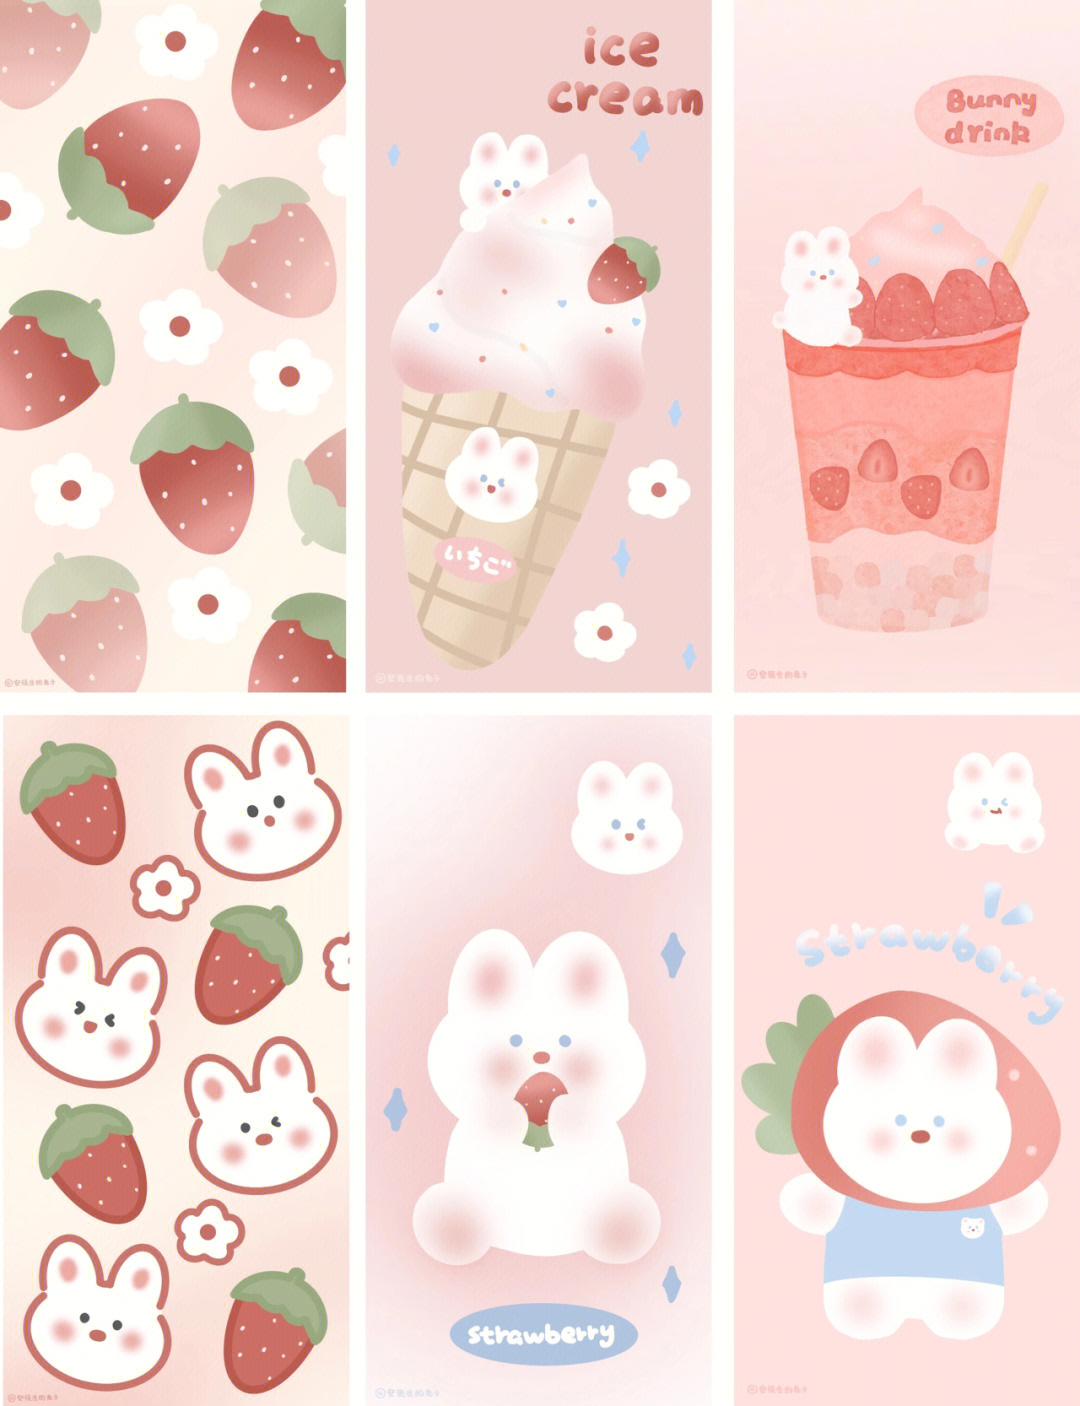 褶皱草莓兔子壁纸图片